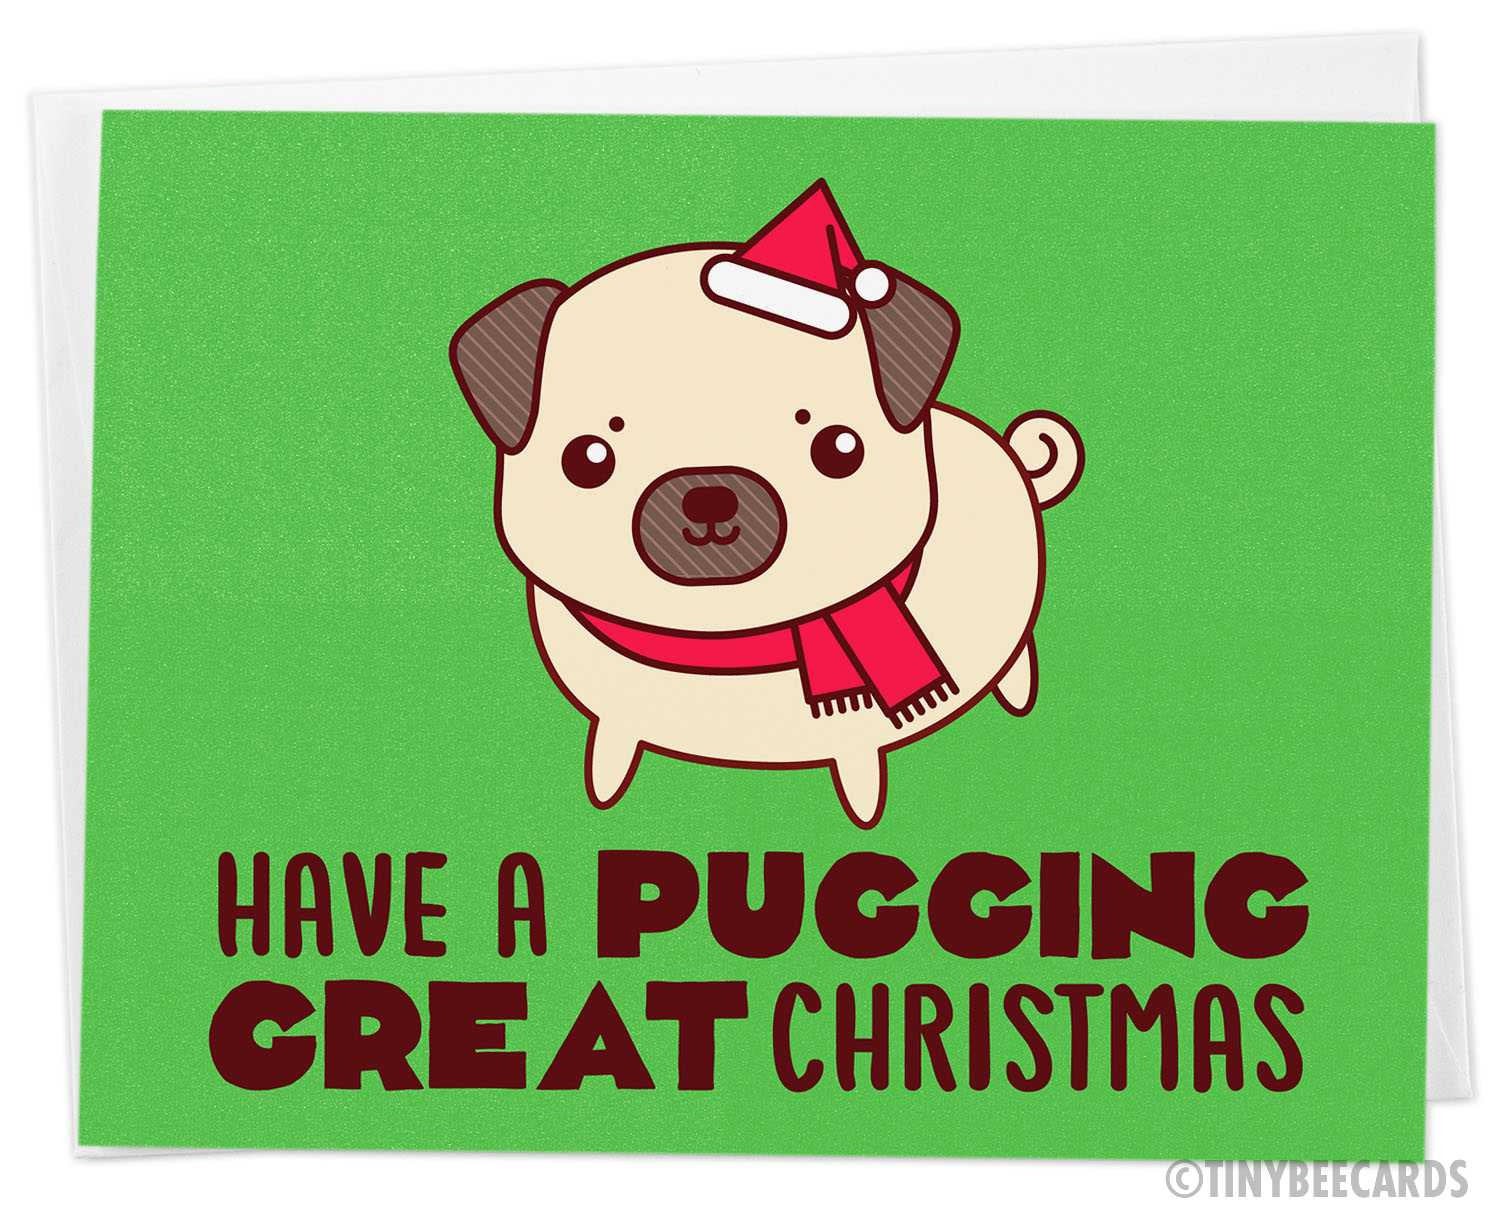 Funny Pug Christmas Card "Pugging Great Christmas"